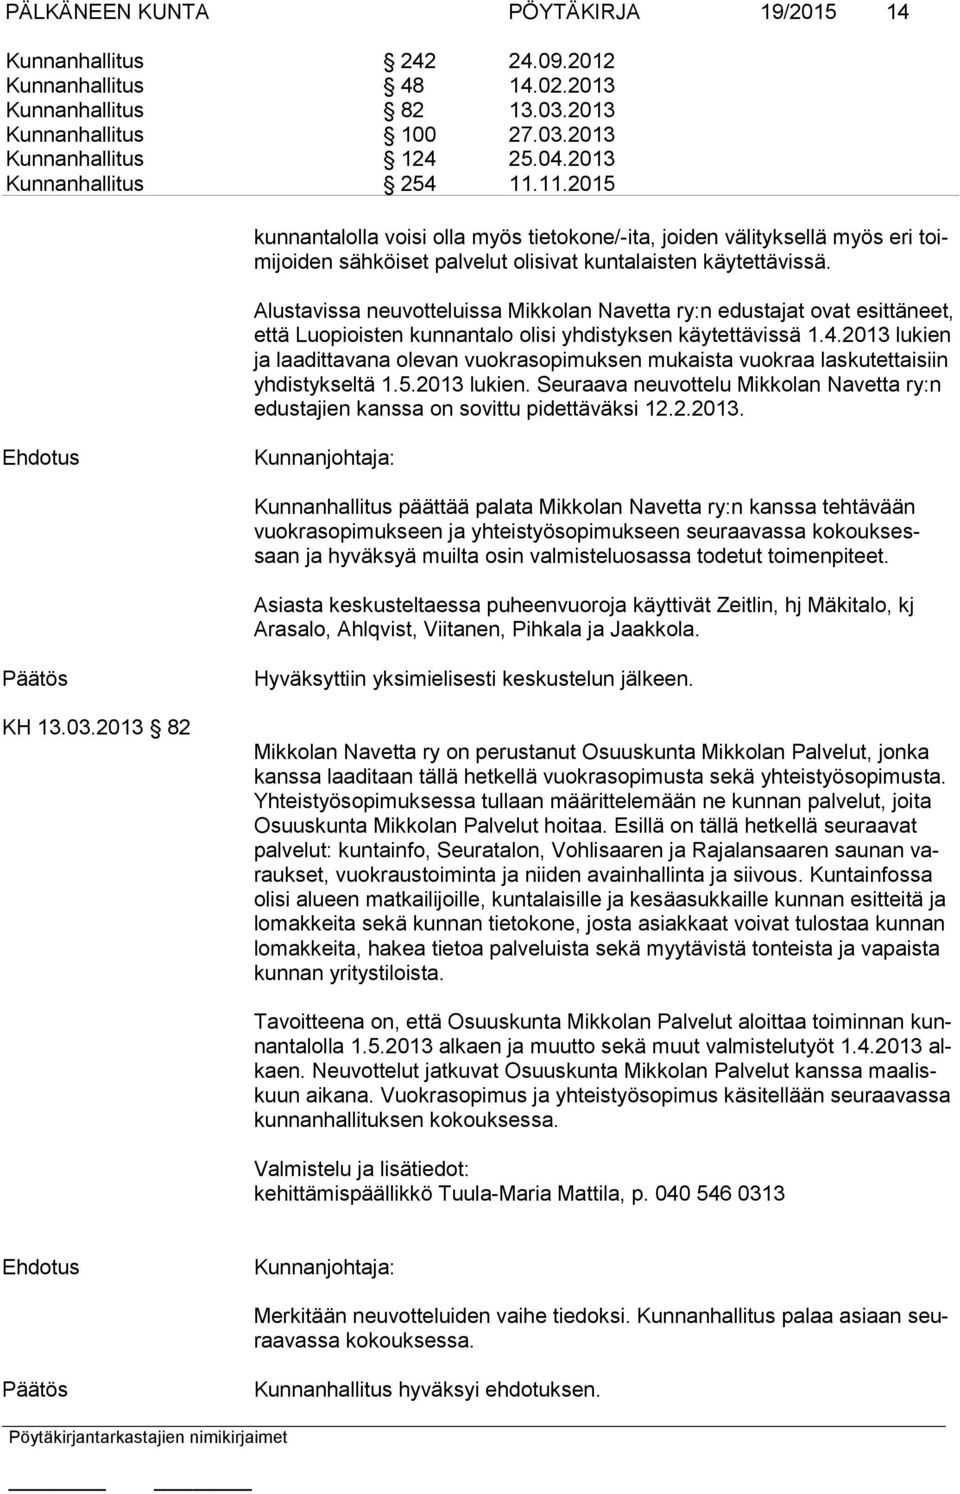 Alustavissa neuvotteluissa Mikkolan Navetta ry:n edustajat ovat esittäneet, että Luopioisten kunnantalo olisi yhdistyksen käytettävissä 1.4.